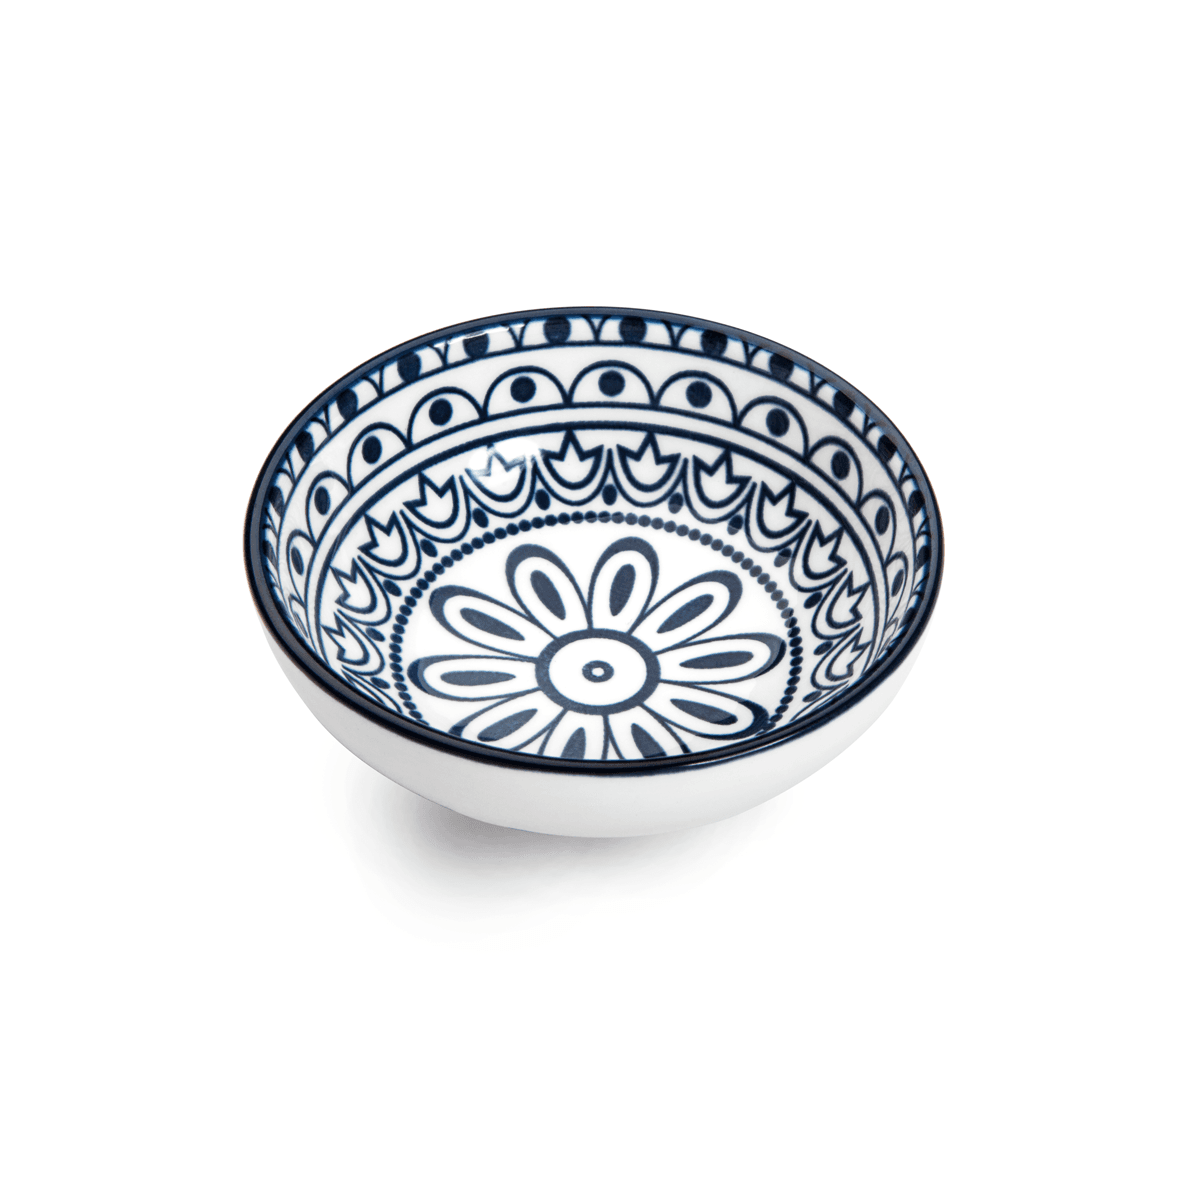 Che Brucia Arabesque Blue Porcelain Round Dish 13 cm / 5" Blue Ivory Porcelain